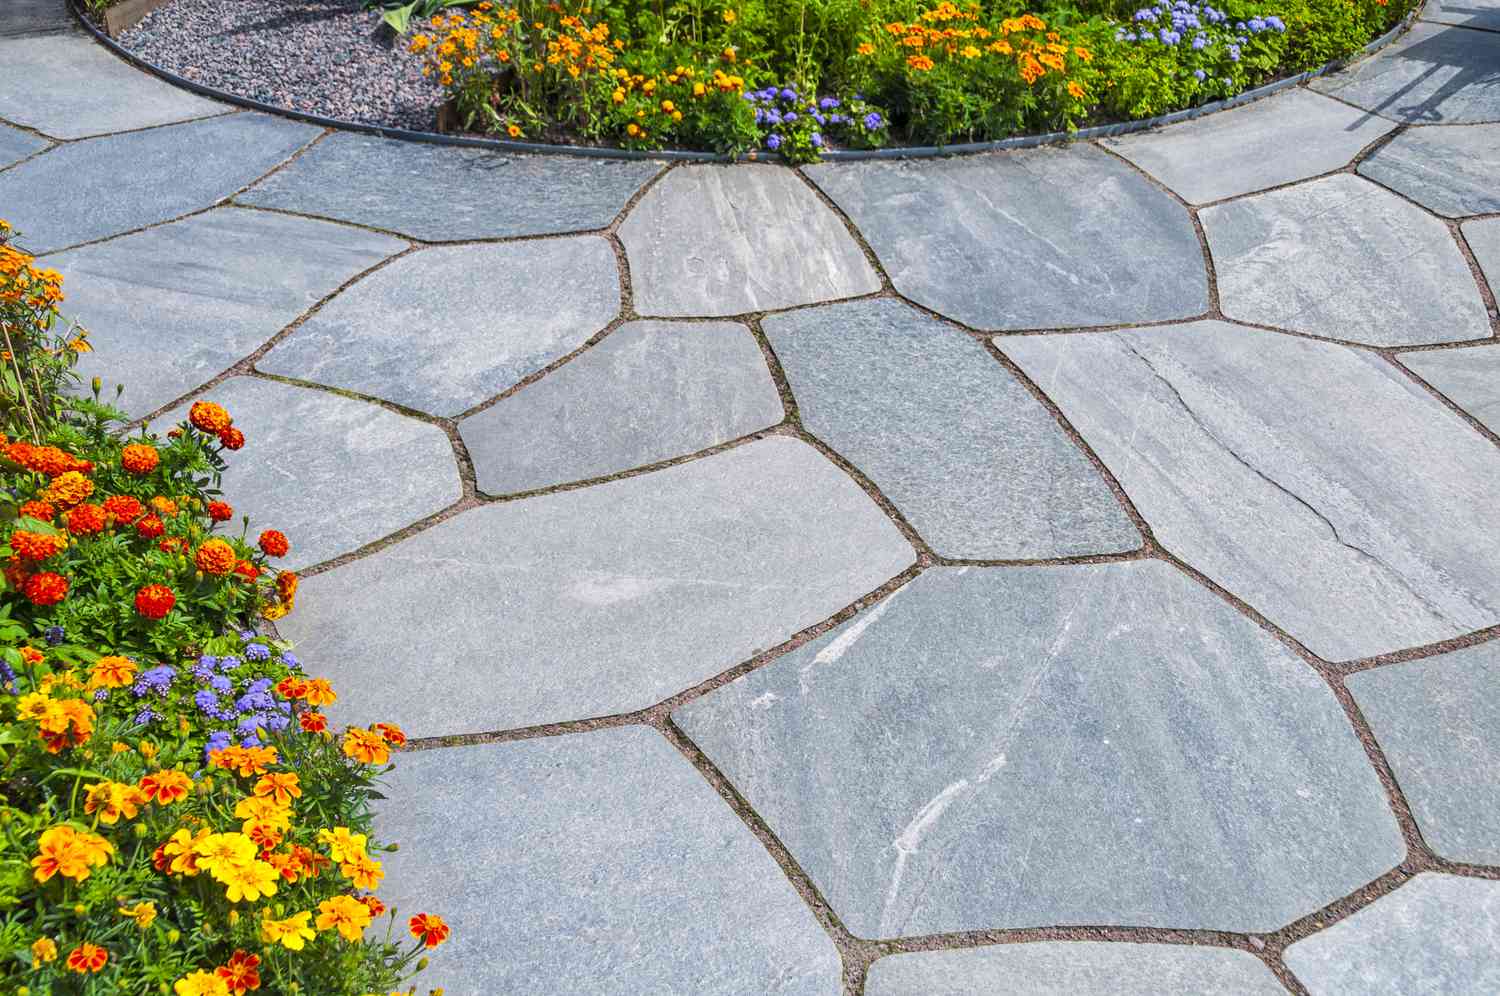 Slate patio stones